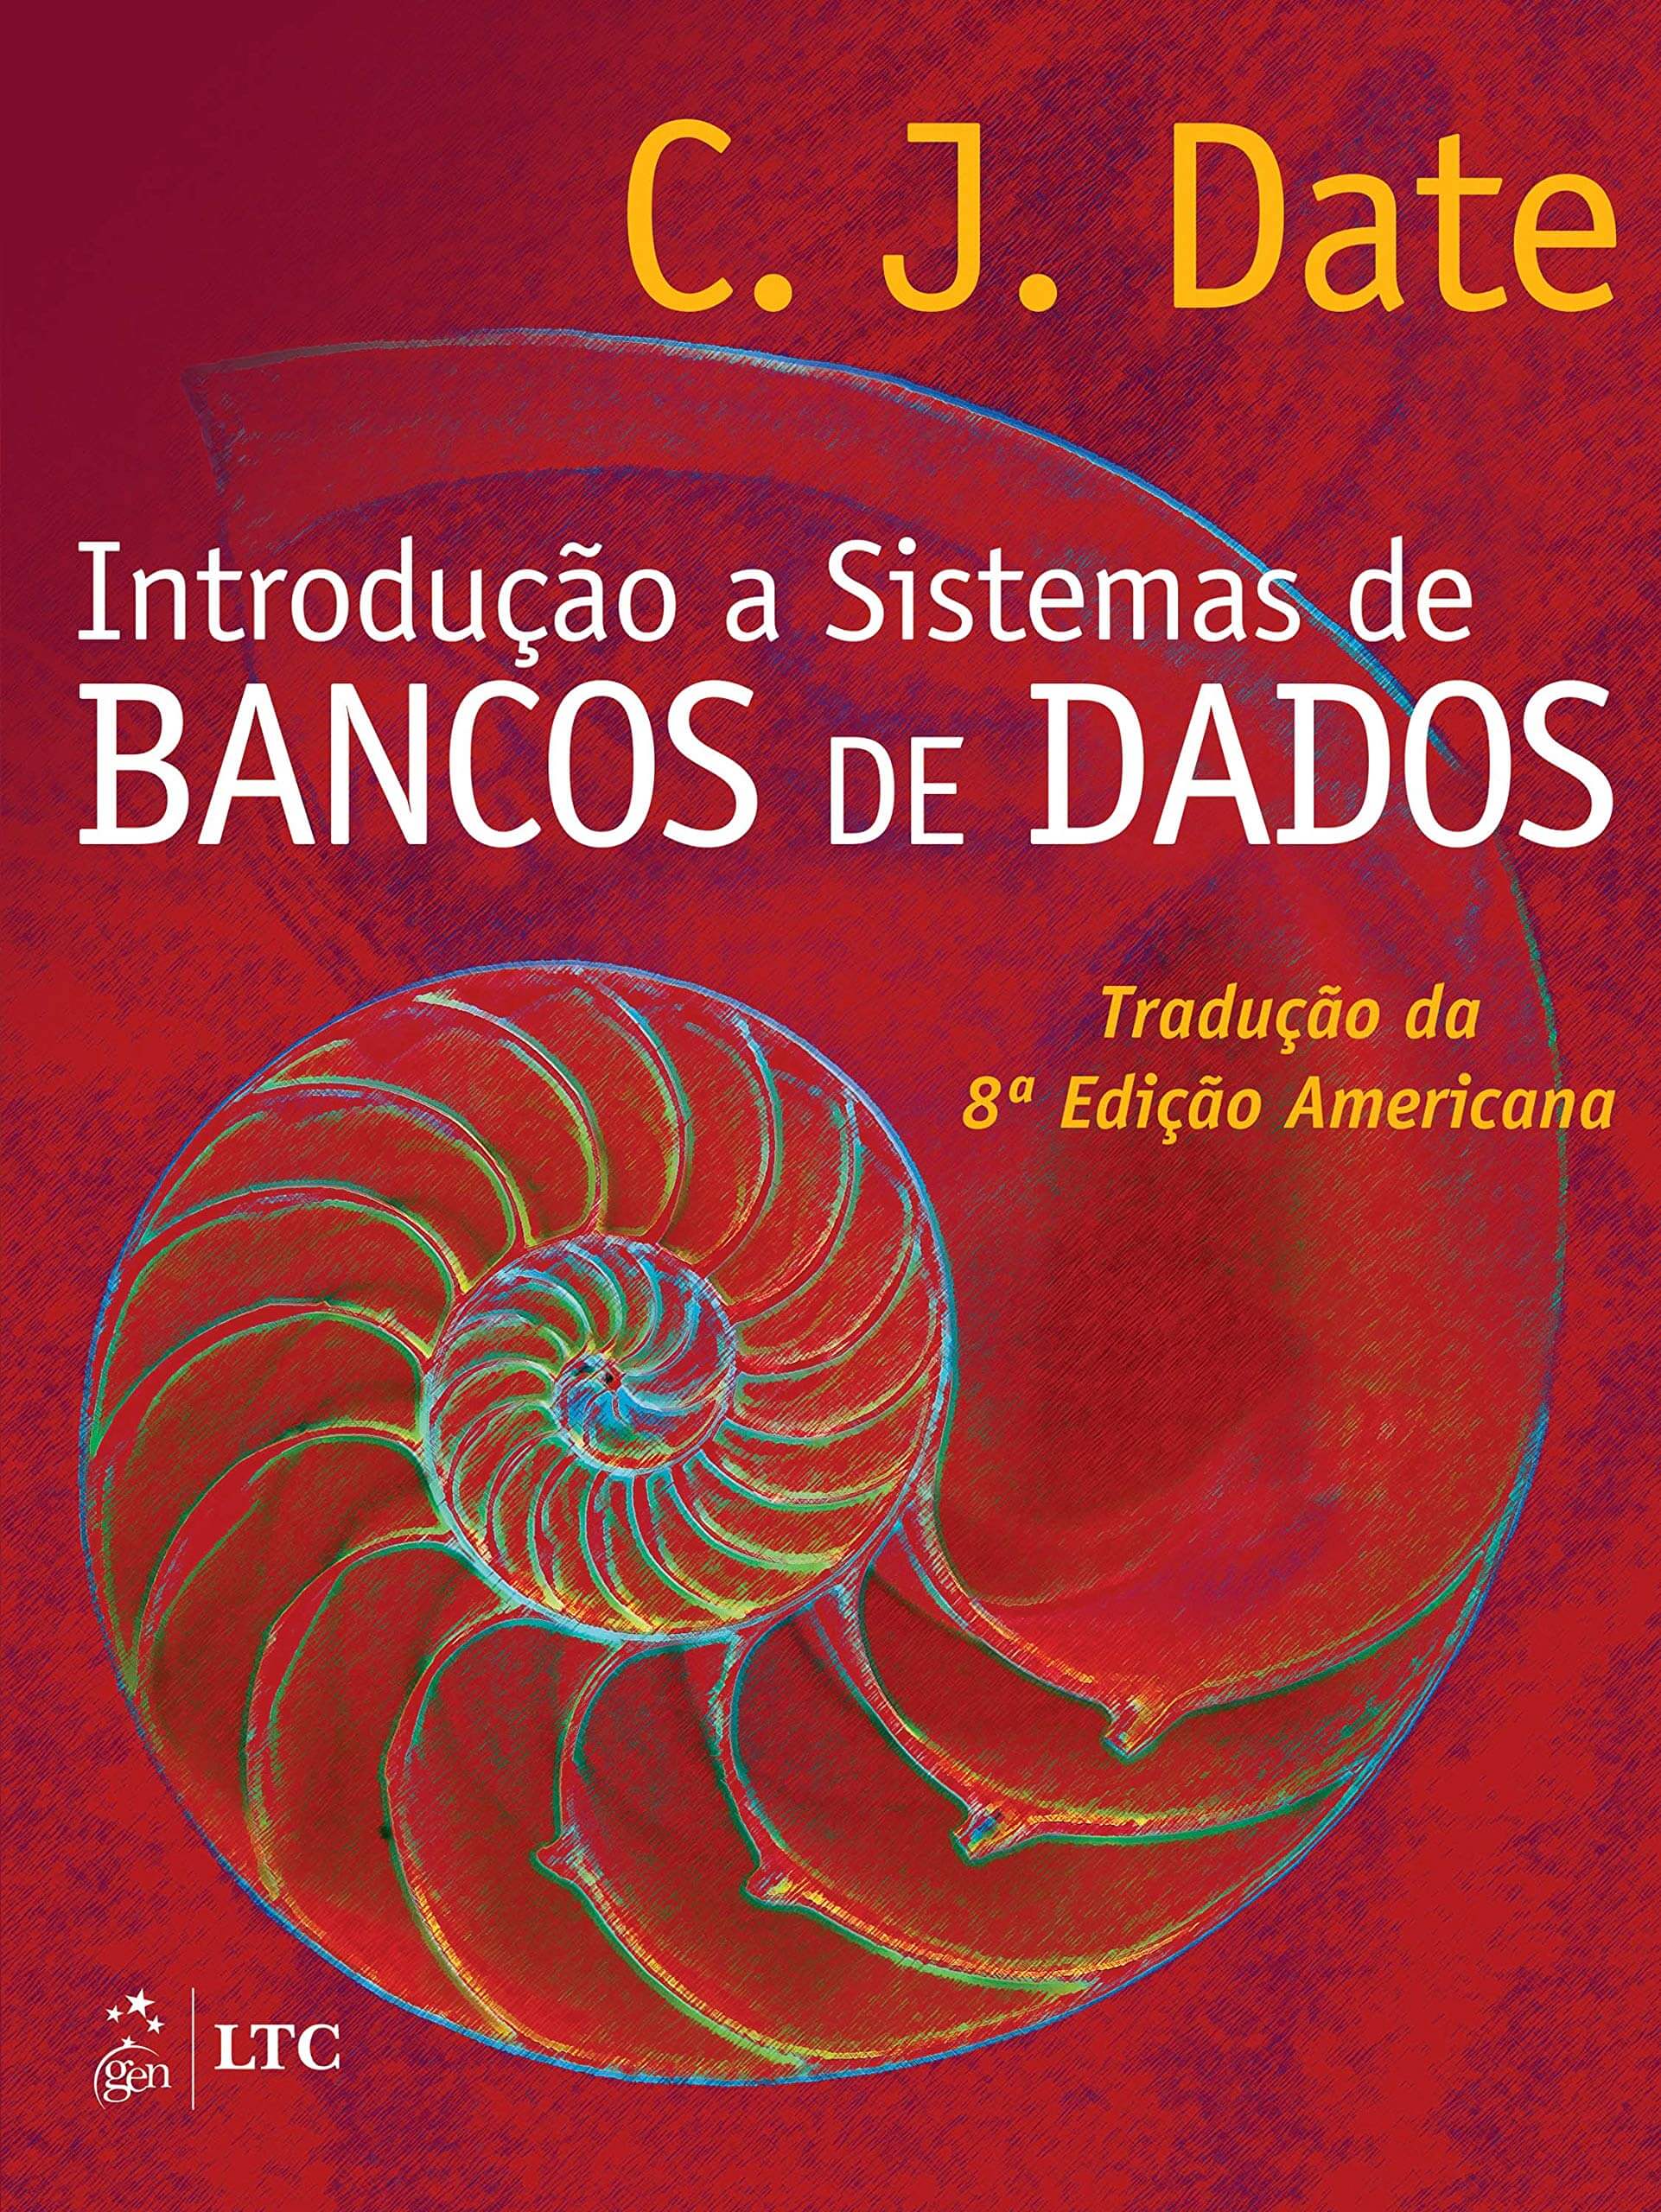 Capa do livro "Introdução a sistemas de bancos de dados"